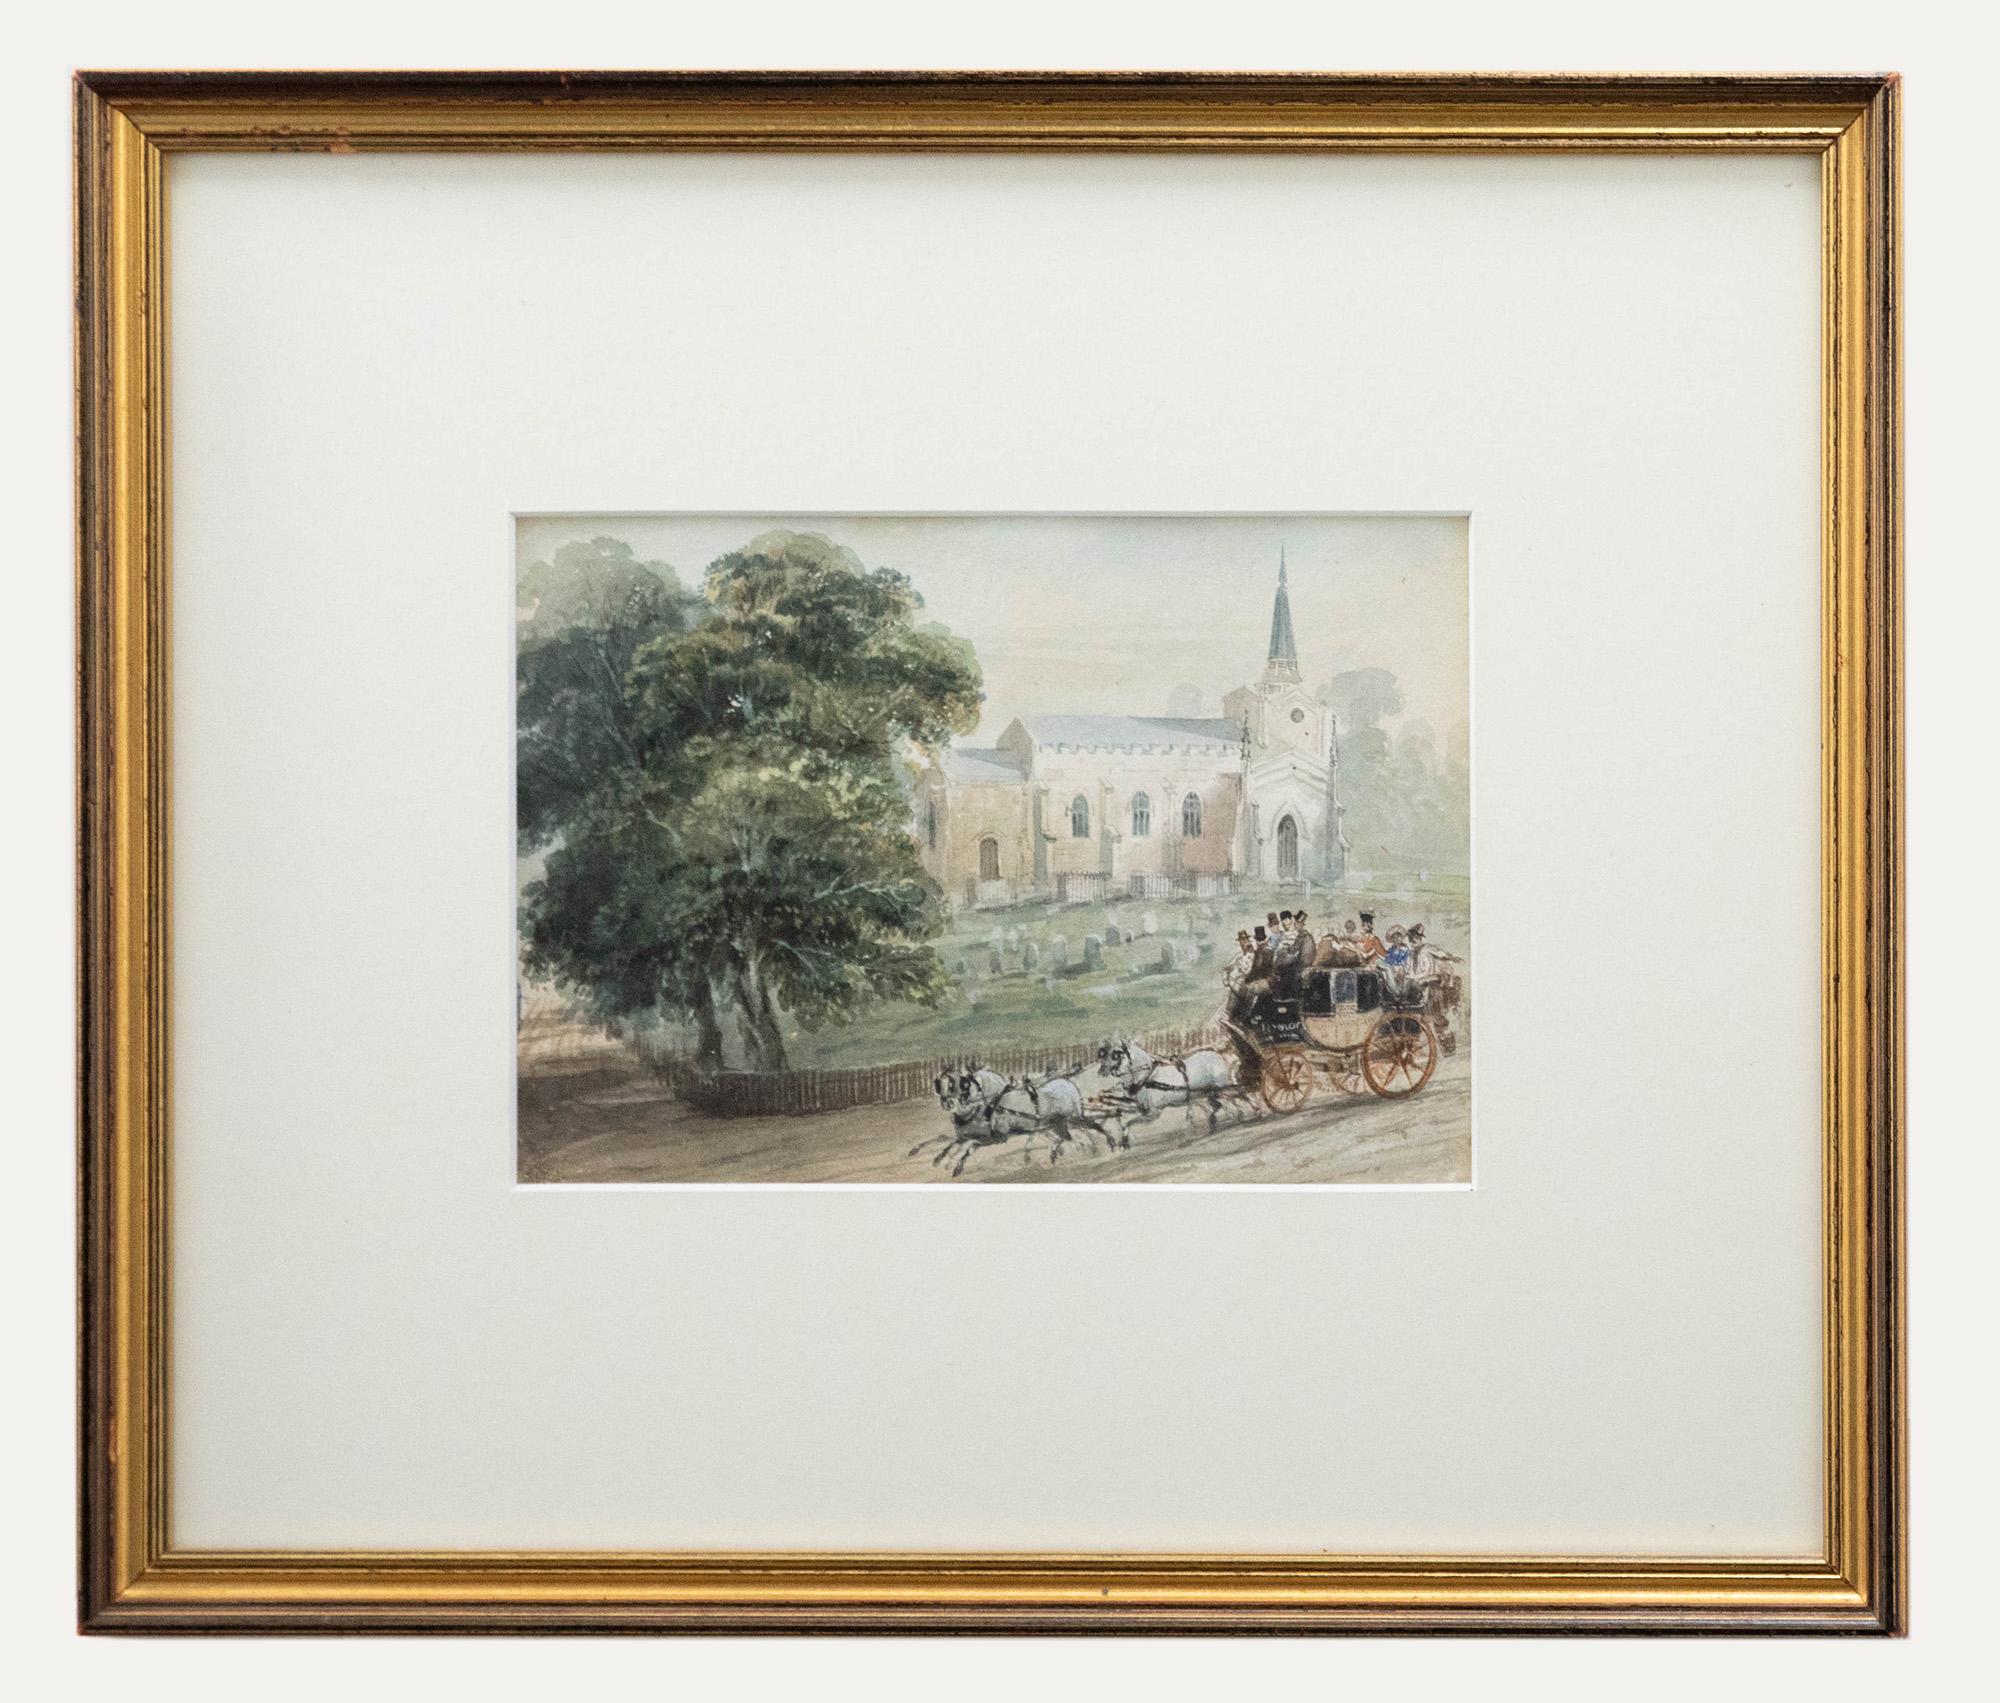 Unknown Landscape Art – Gerahmtes Aquarell aus dem 19. Jahrhundert - Coach & Horses by a Church's